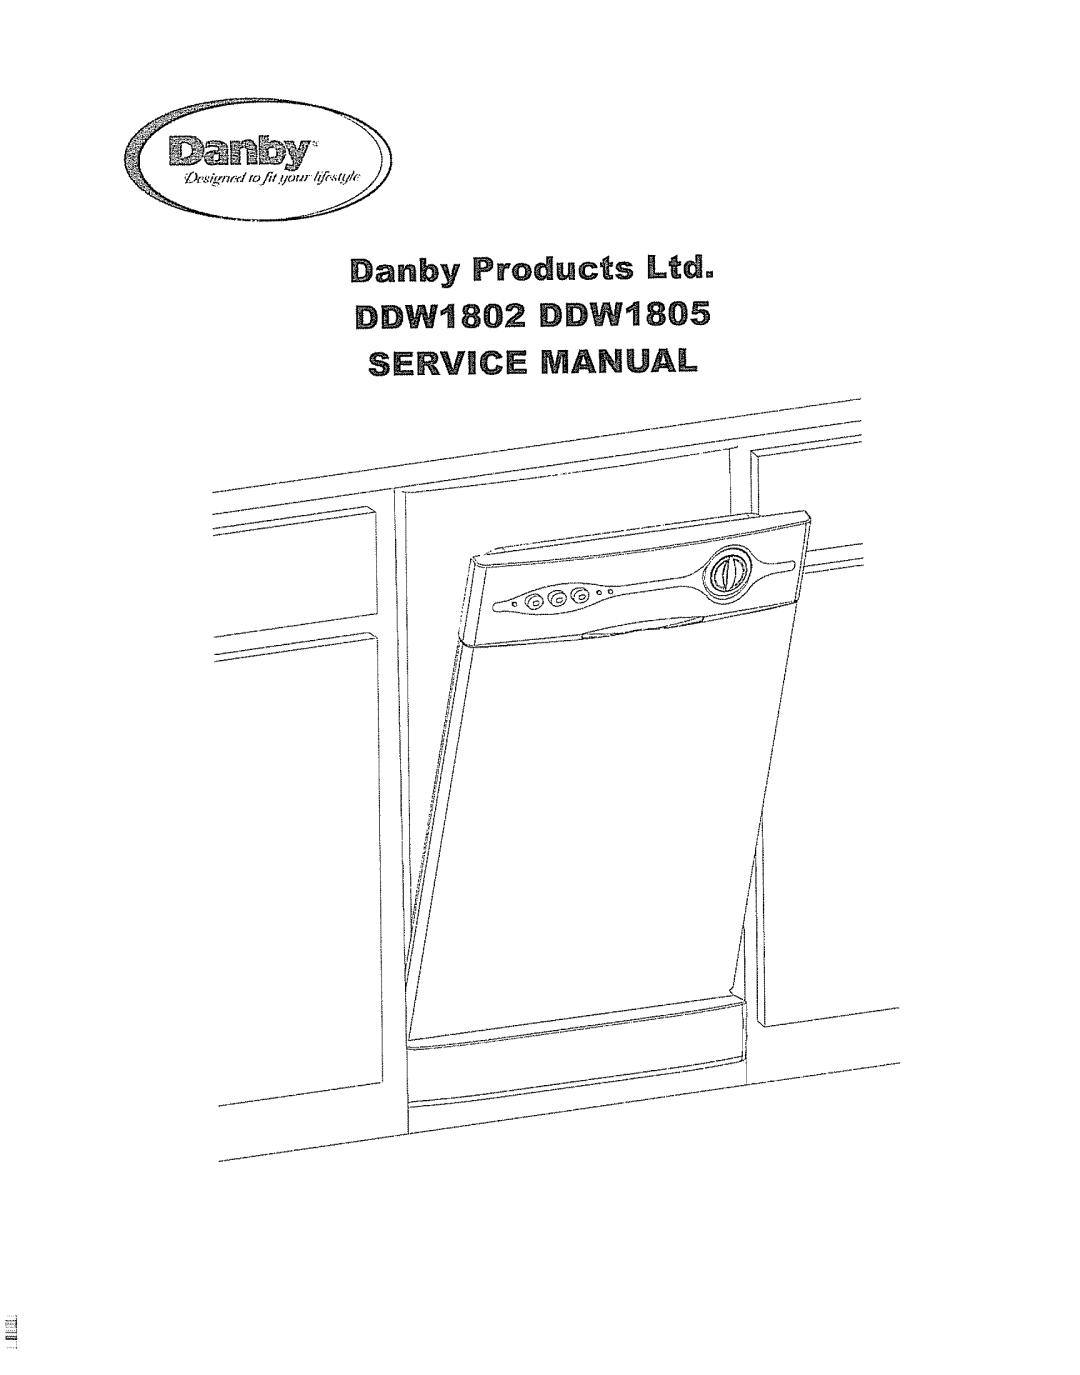 Danby DDW1802, DDW1805 manual Servic Manual 